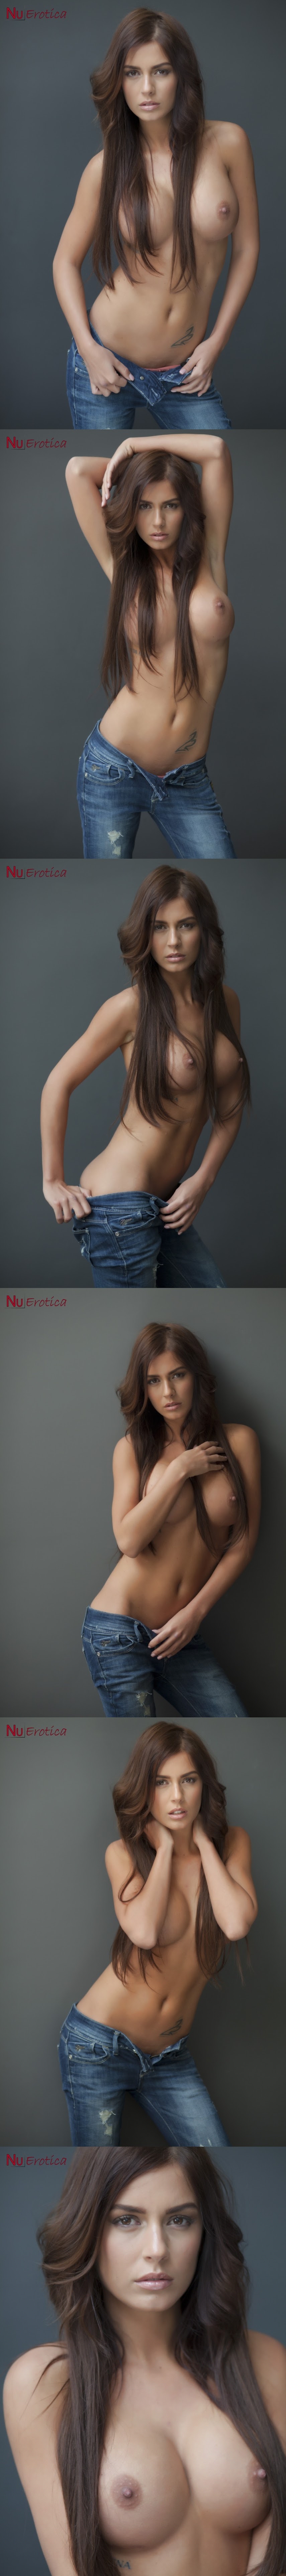 2015-01-21_Alexa_Varga_-_Alexa_Topless_In_Jeans.zip-jk- NuErotica 2015-01-21 Alexa Varga - Alexa Topless In Jeans